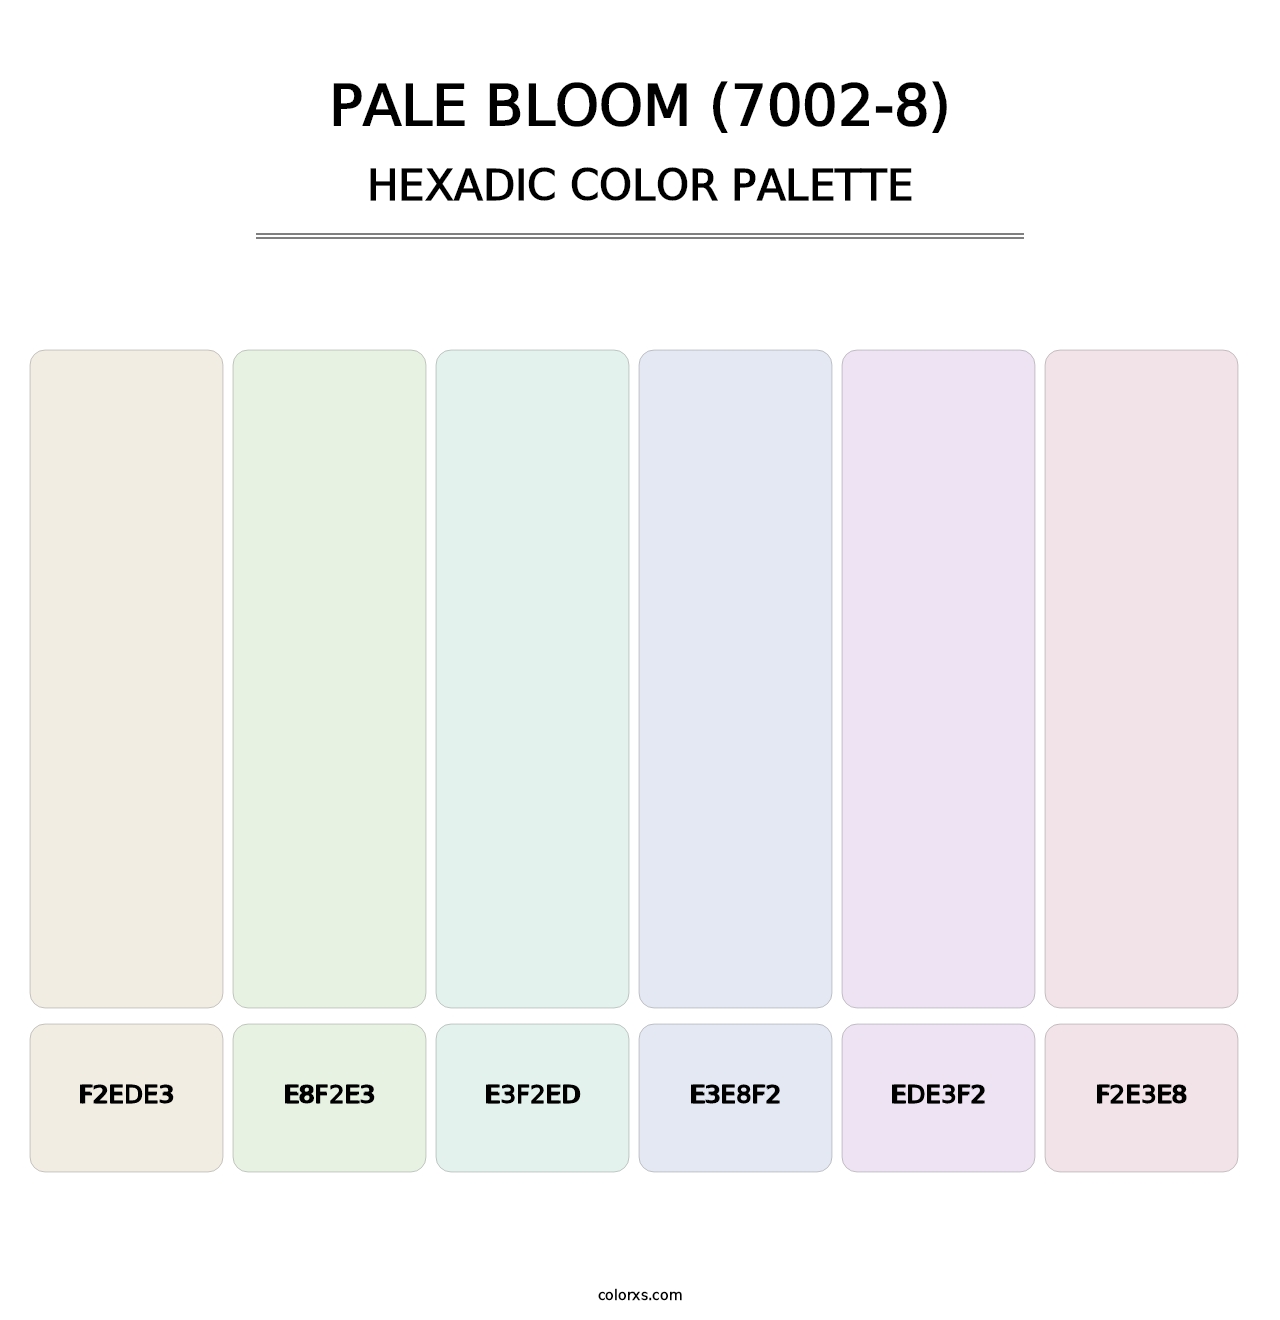 Pale Bloom (7002-8) - Hexadic Color Palette